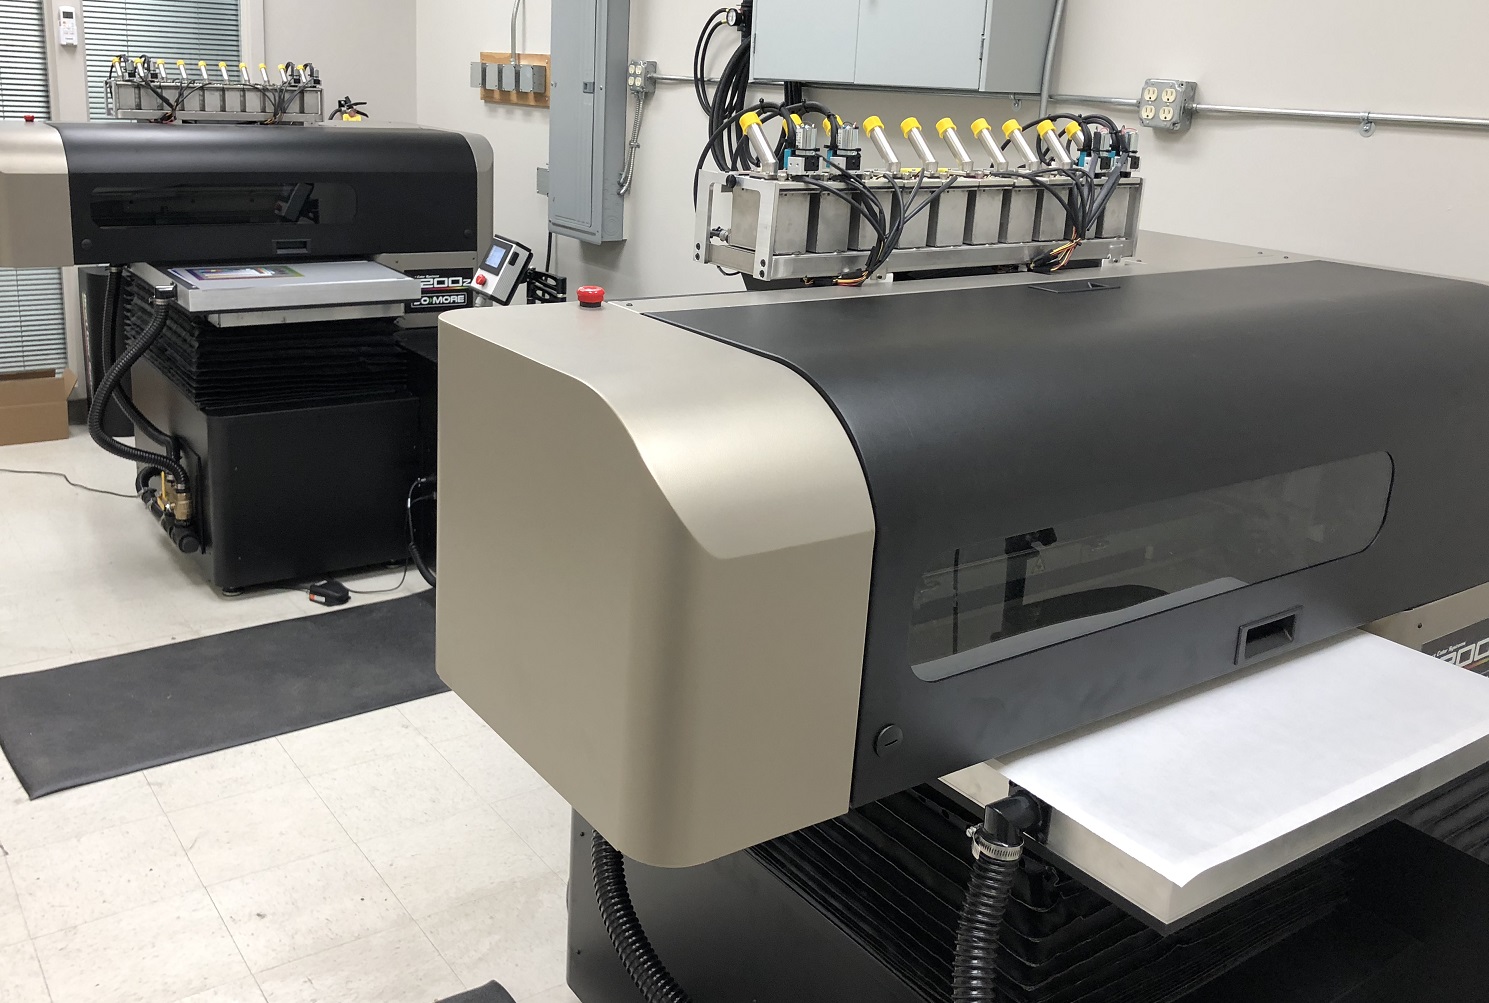 Direct Jet 7200z UV Printer